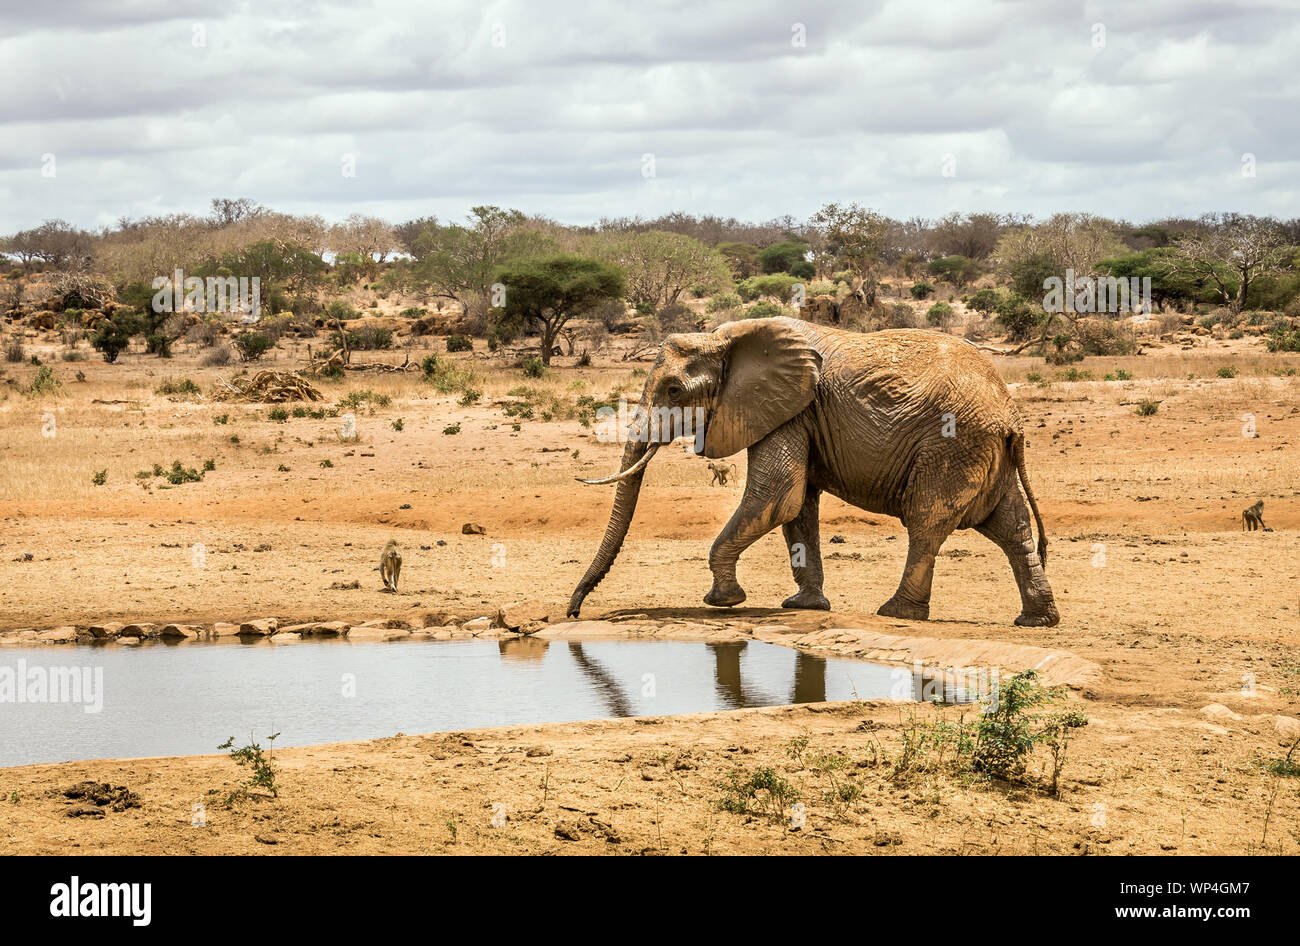 Primer plano de elefante africano en llanuras de sabana en el parque Tsavo Este, Kenia Foto de stock